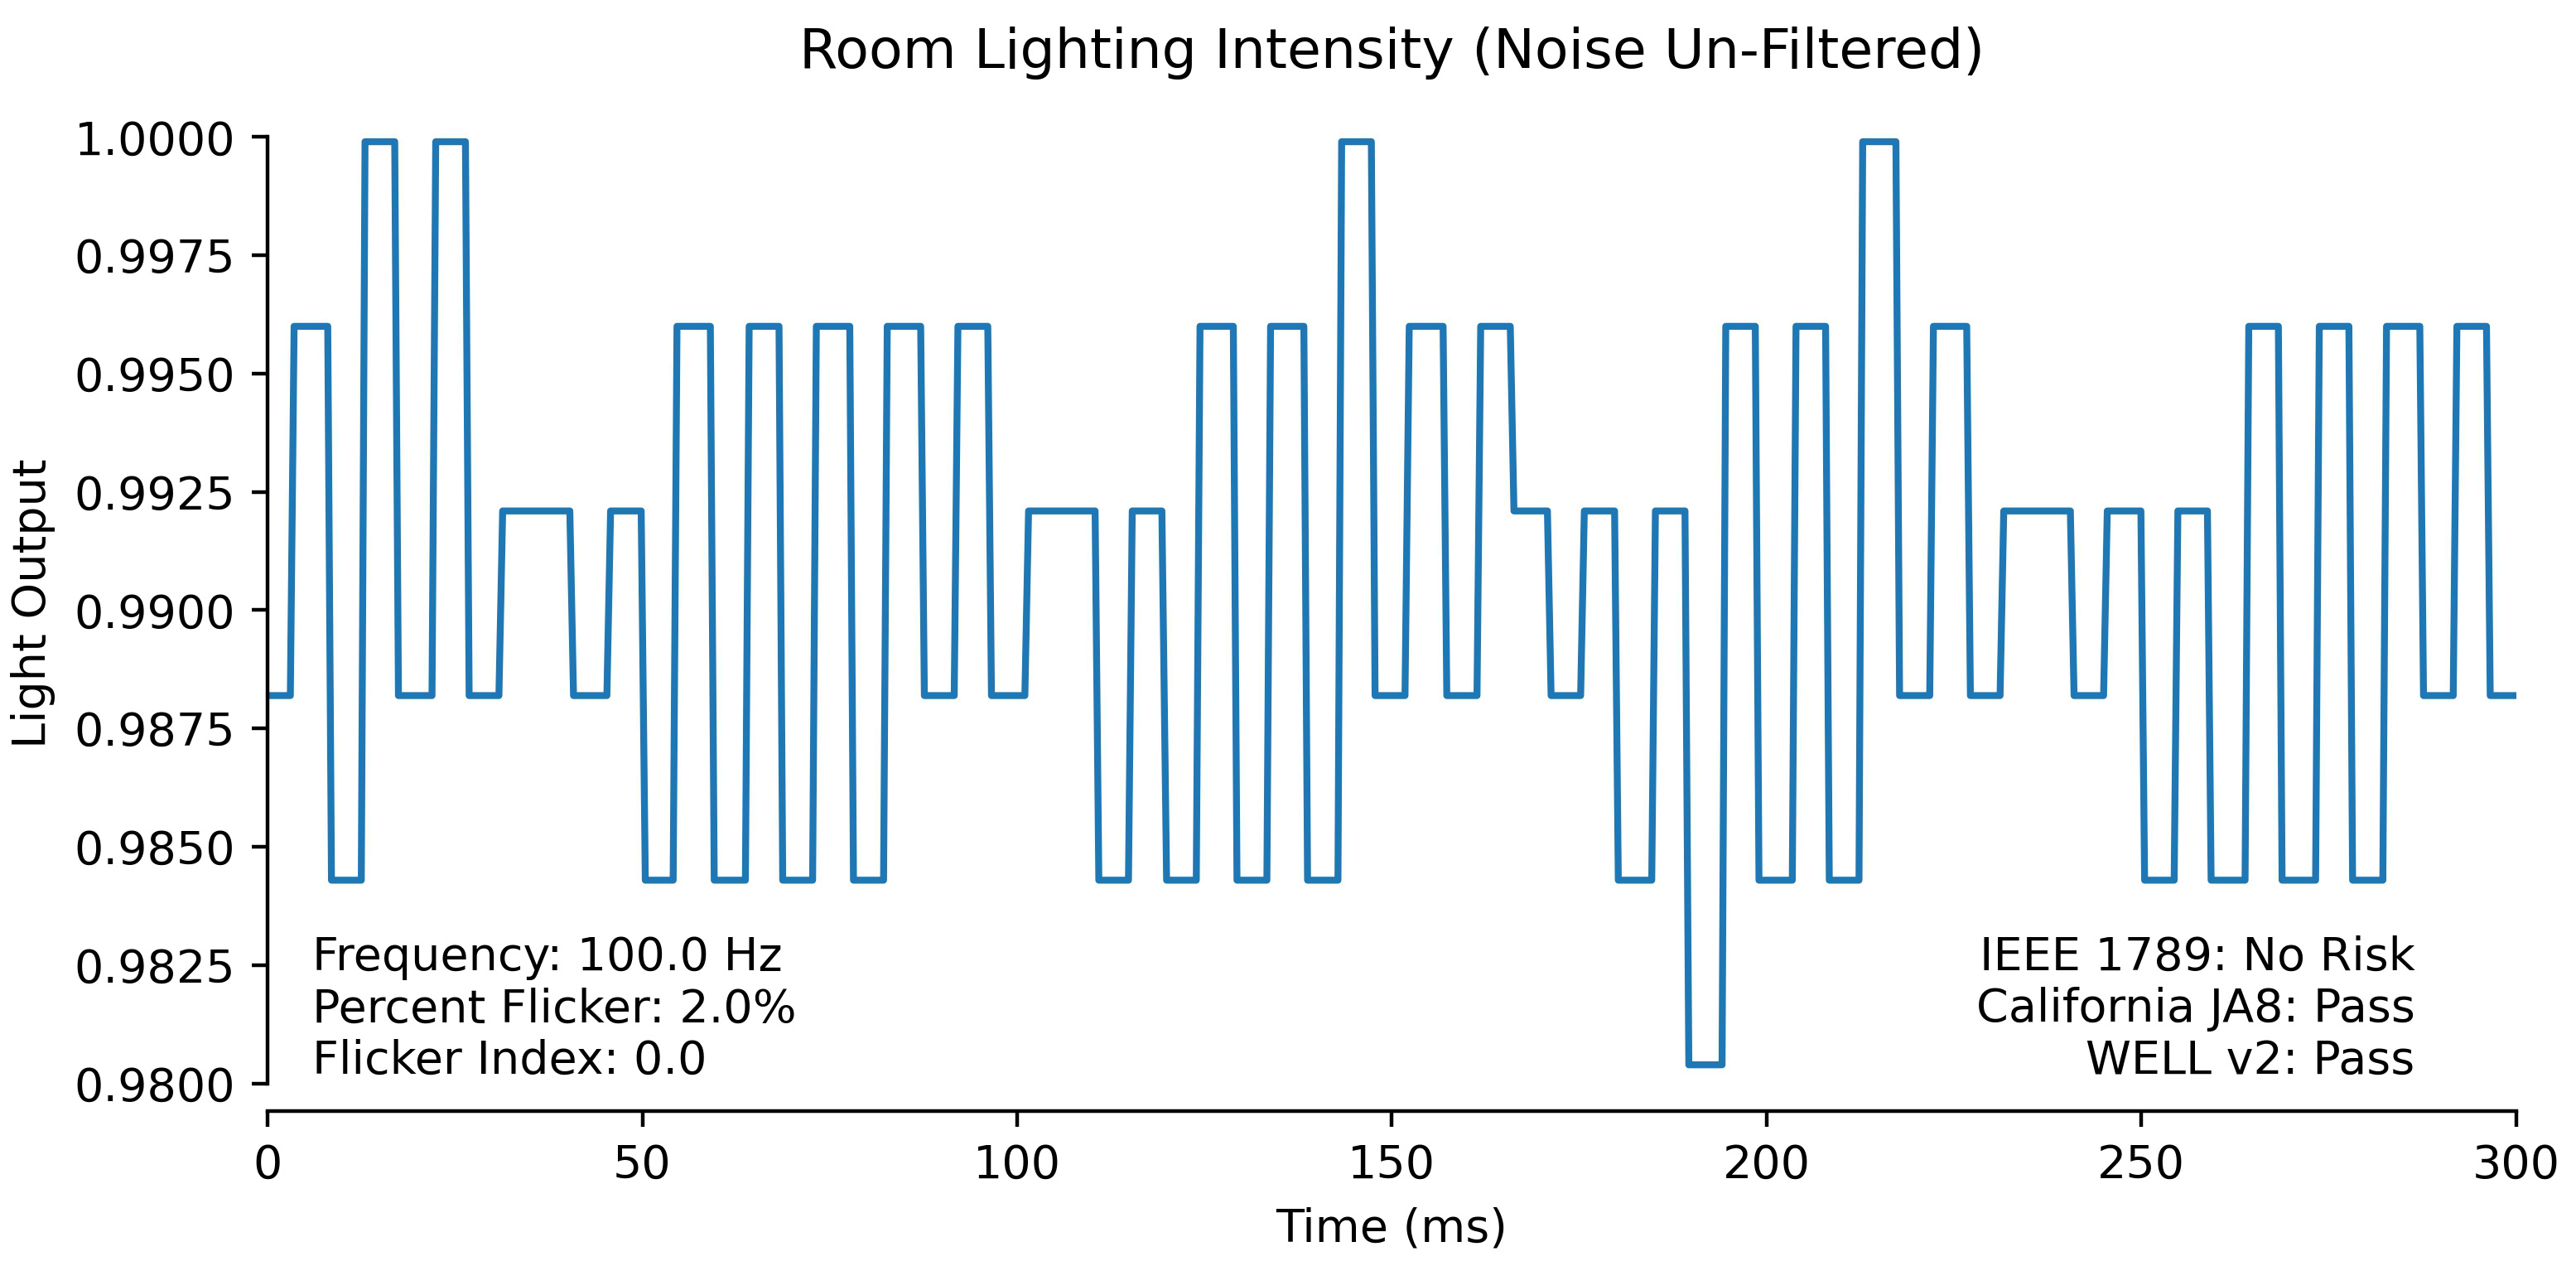 Room flicker waveform unfiltered for noise.